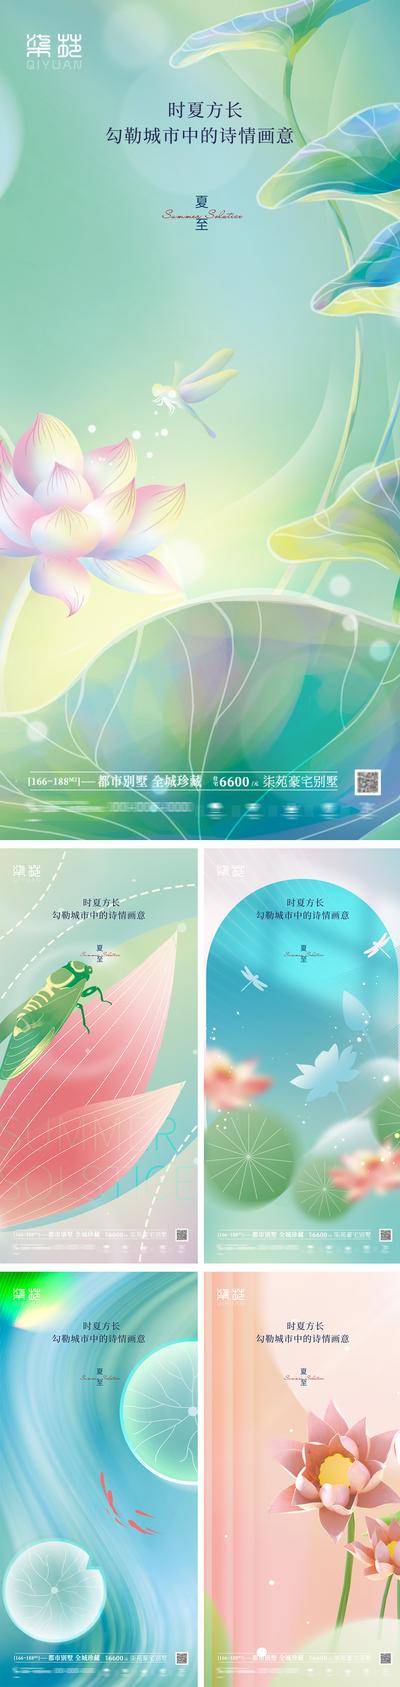 南门网 海报 房地产 二十四节气 夏至 荷花 荷叶 蜻蜓 清凉 系列